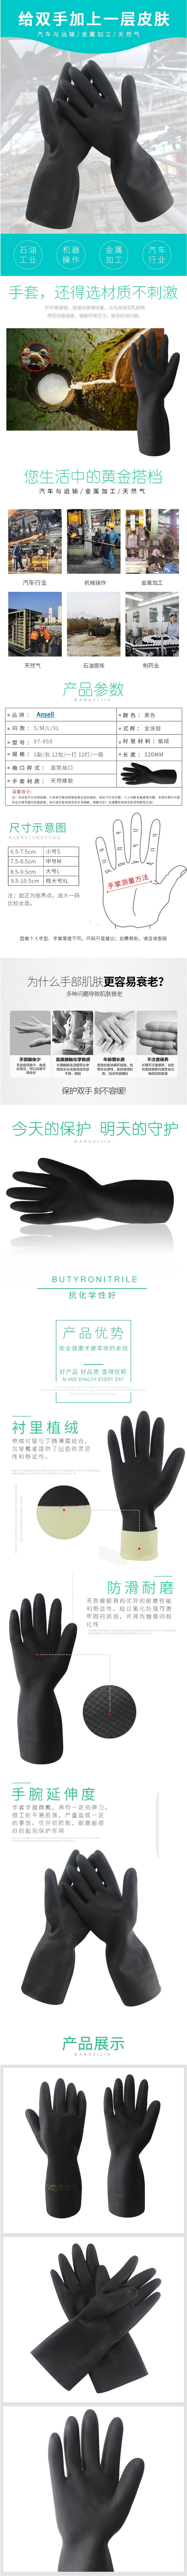 安思尔 87-950 重量型耐酸碱化工橡胶手套